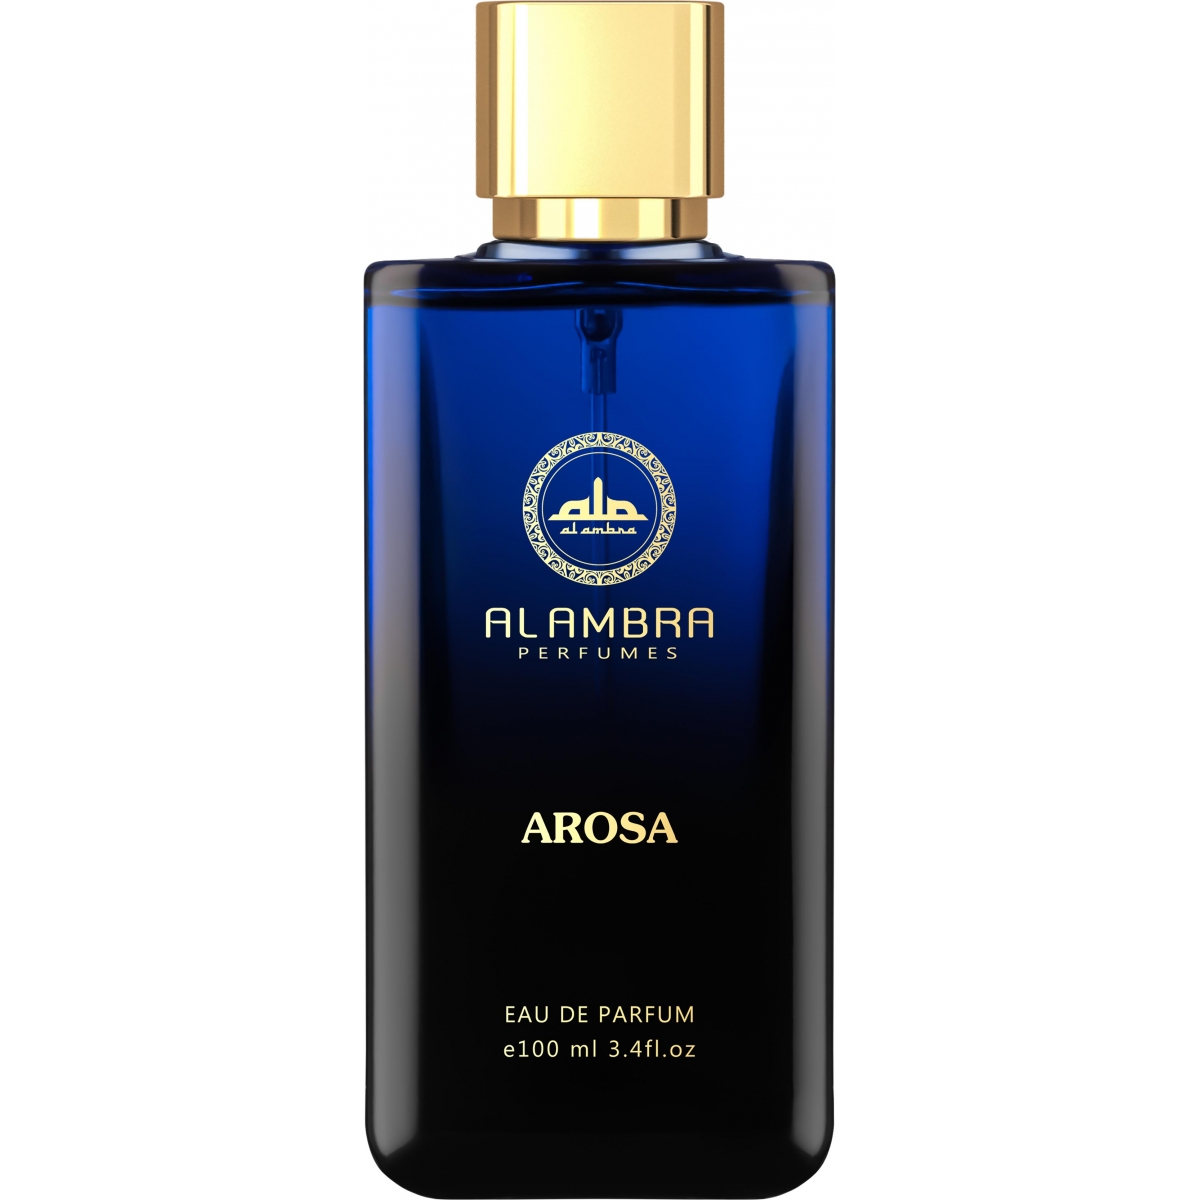 Arosa Al Ambra Perfumes Perfumes, Profumi Da Donna, Arada Perfumes